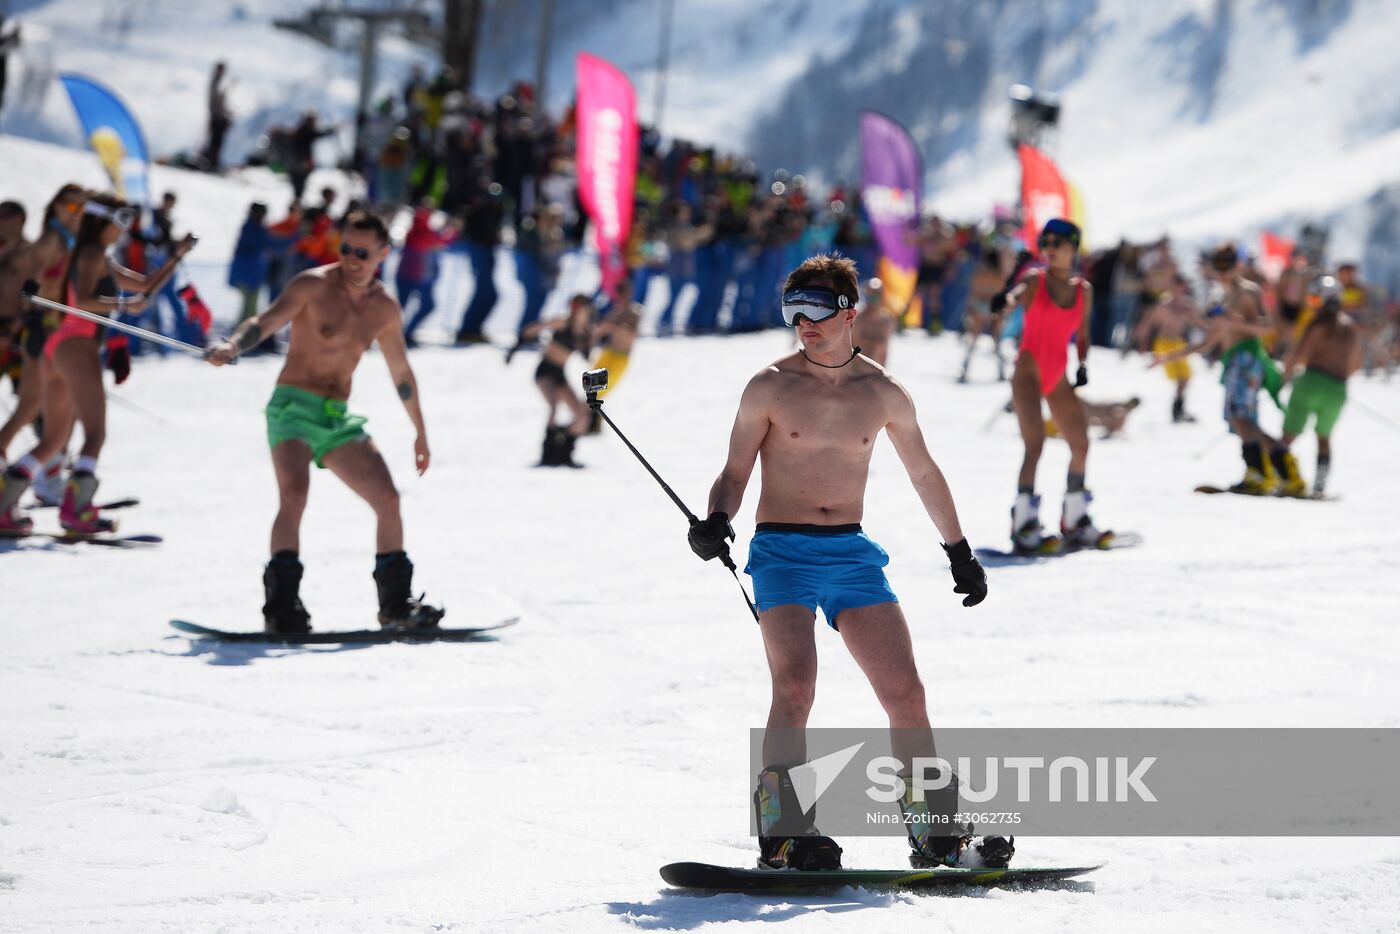 BoogelWoogel alpine carnival in Sochi